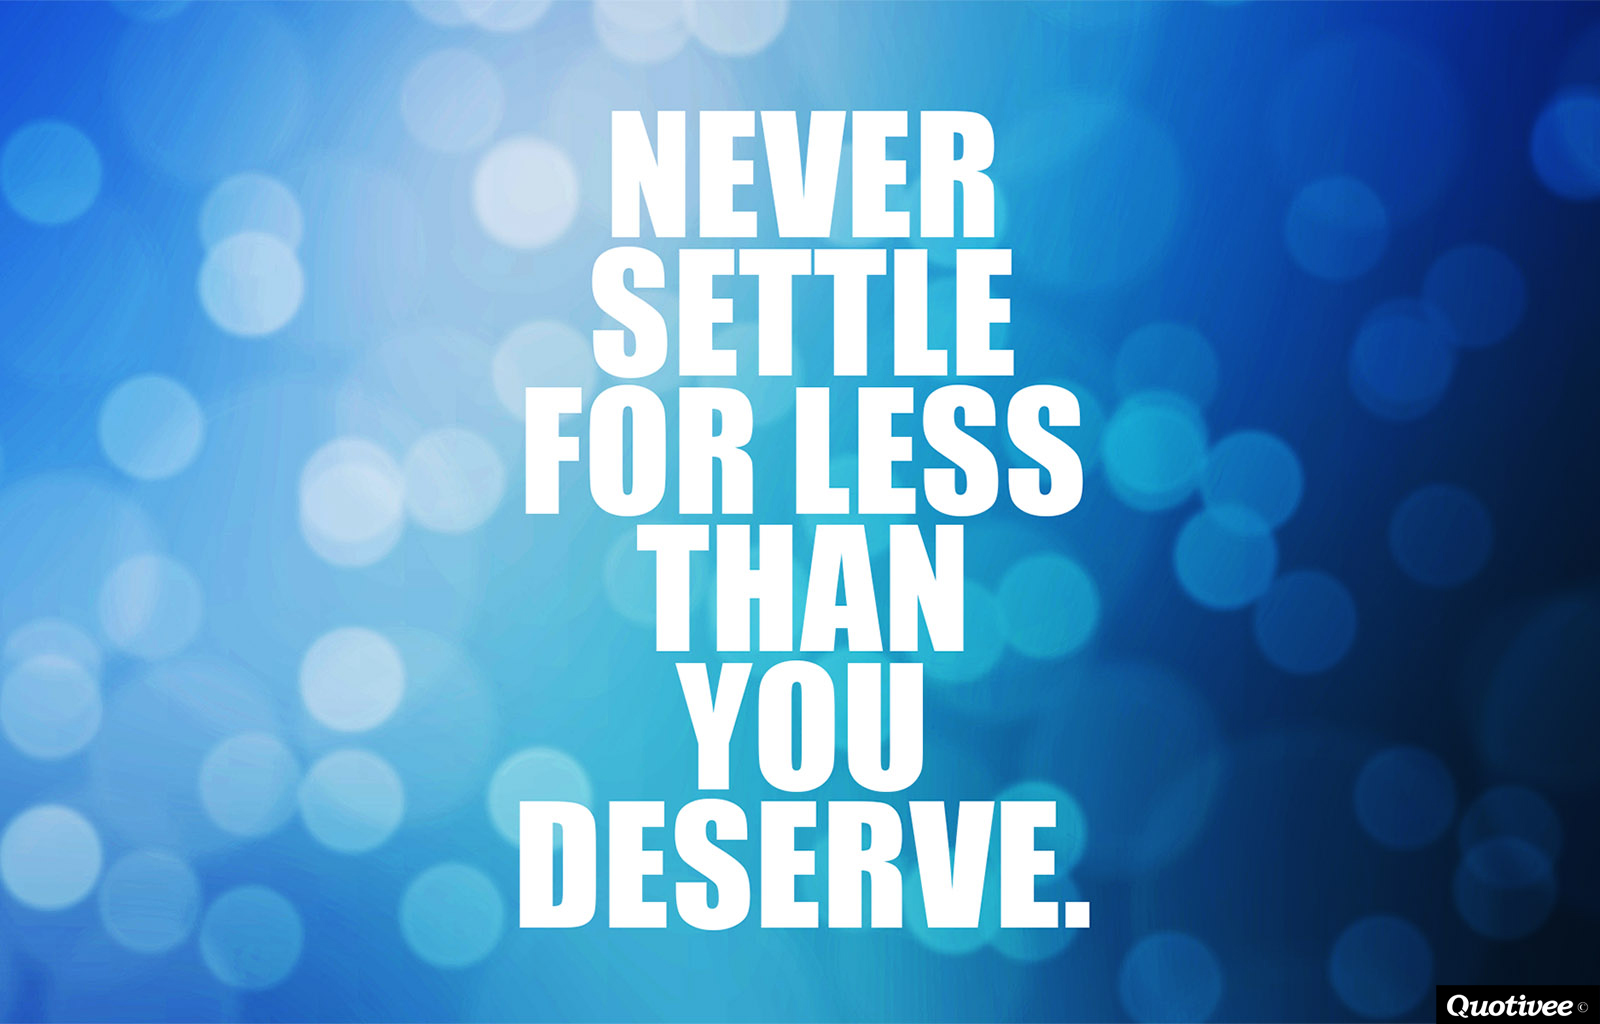 Motivational Wallpaper on : NEVER settle for less than you deserve.